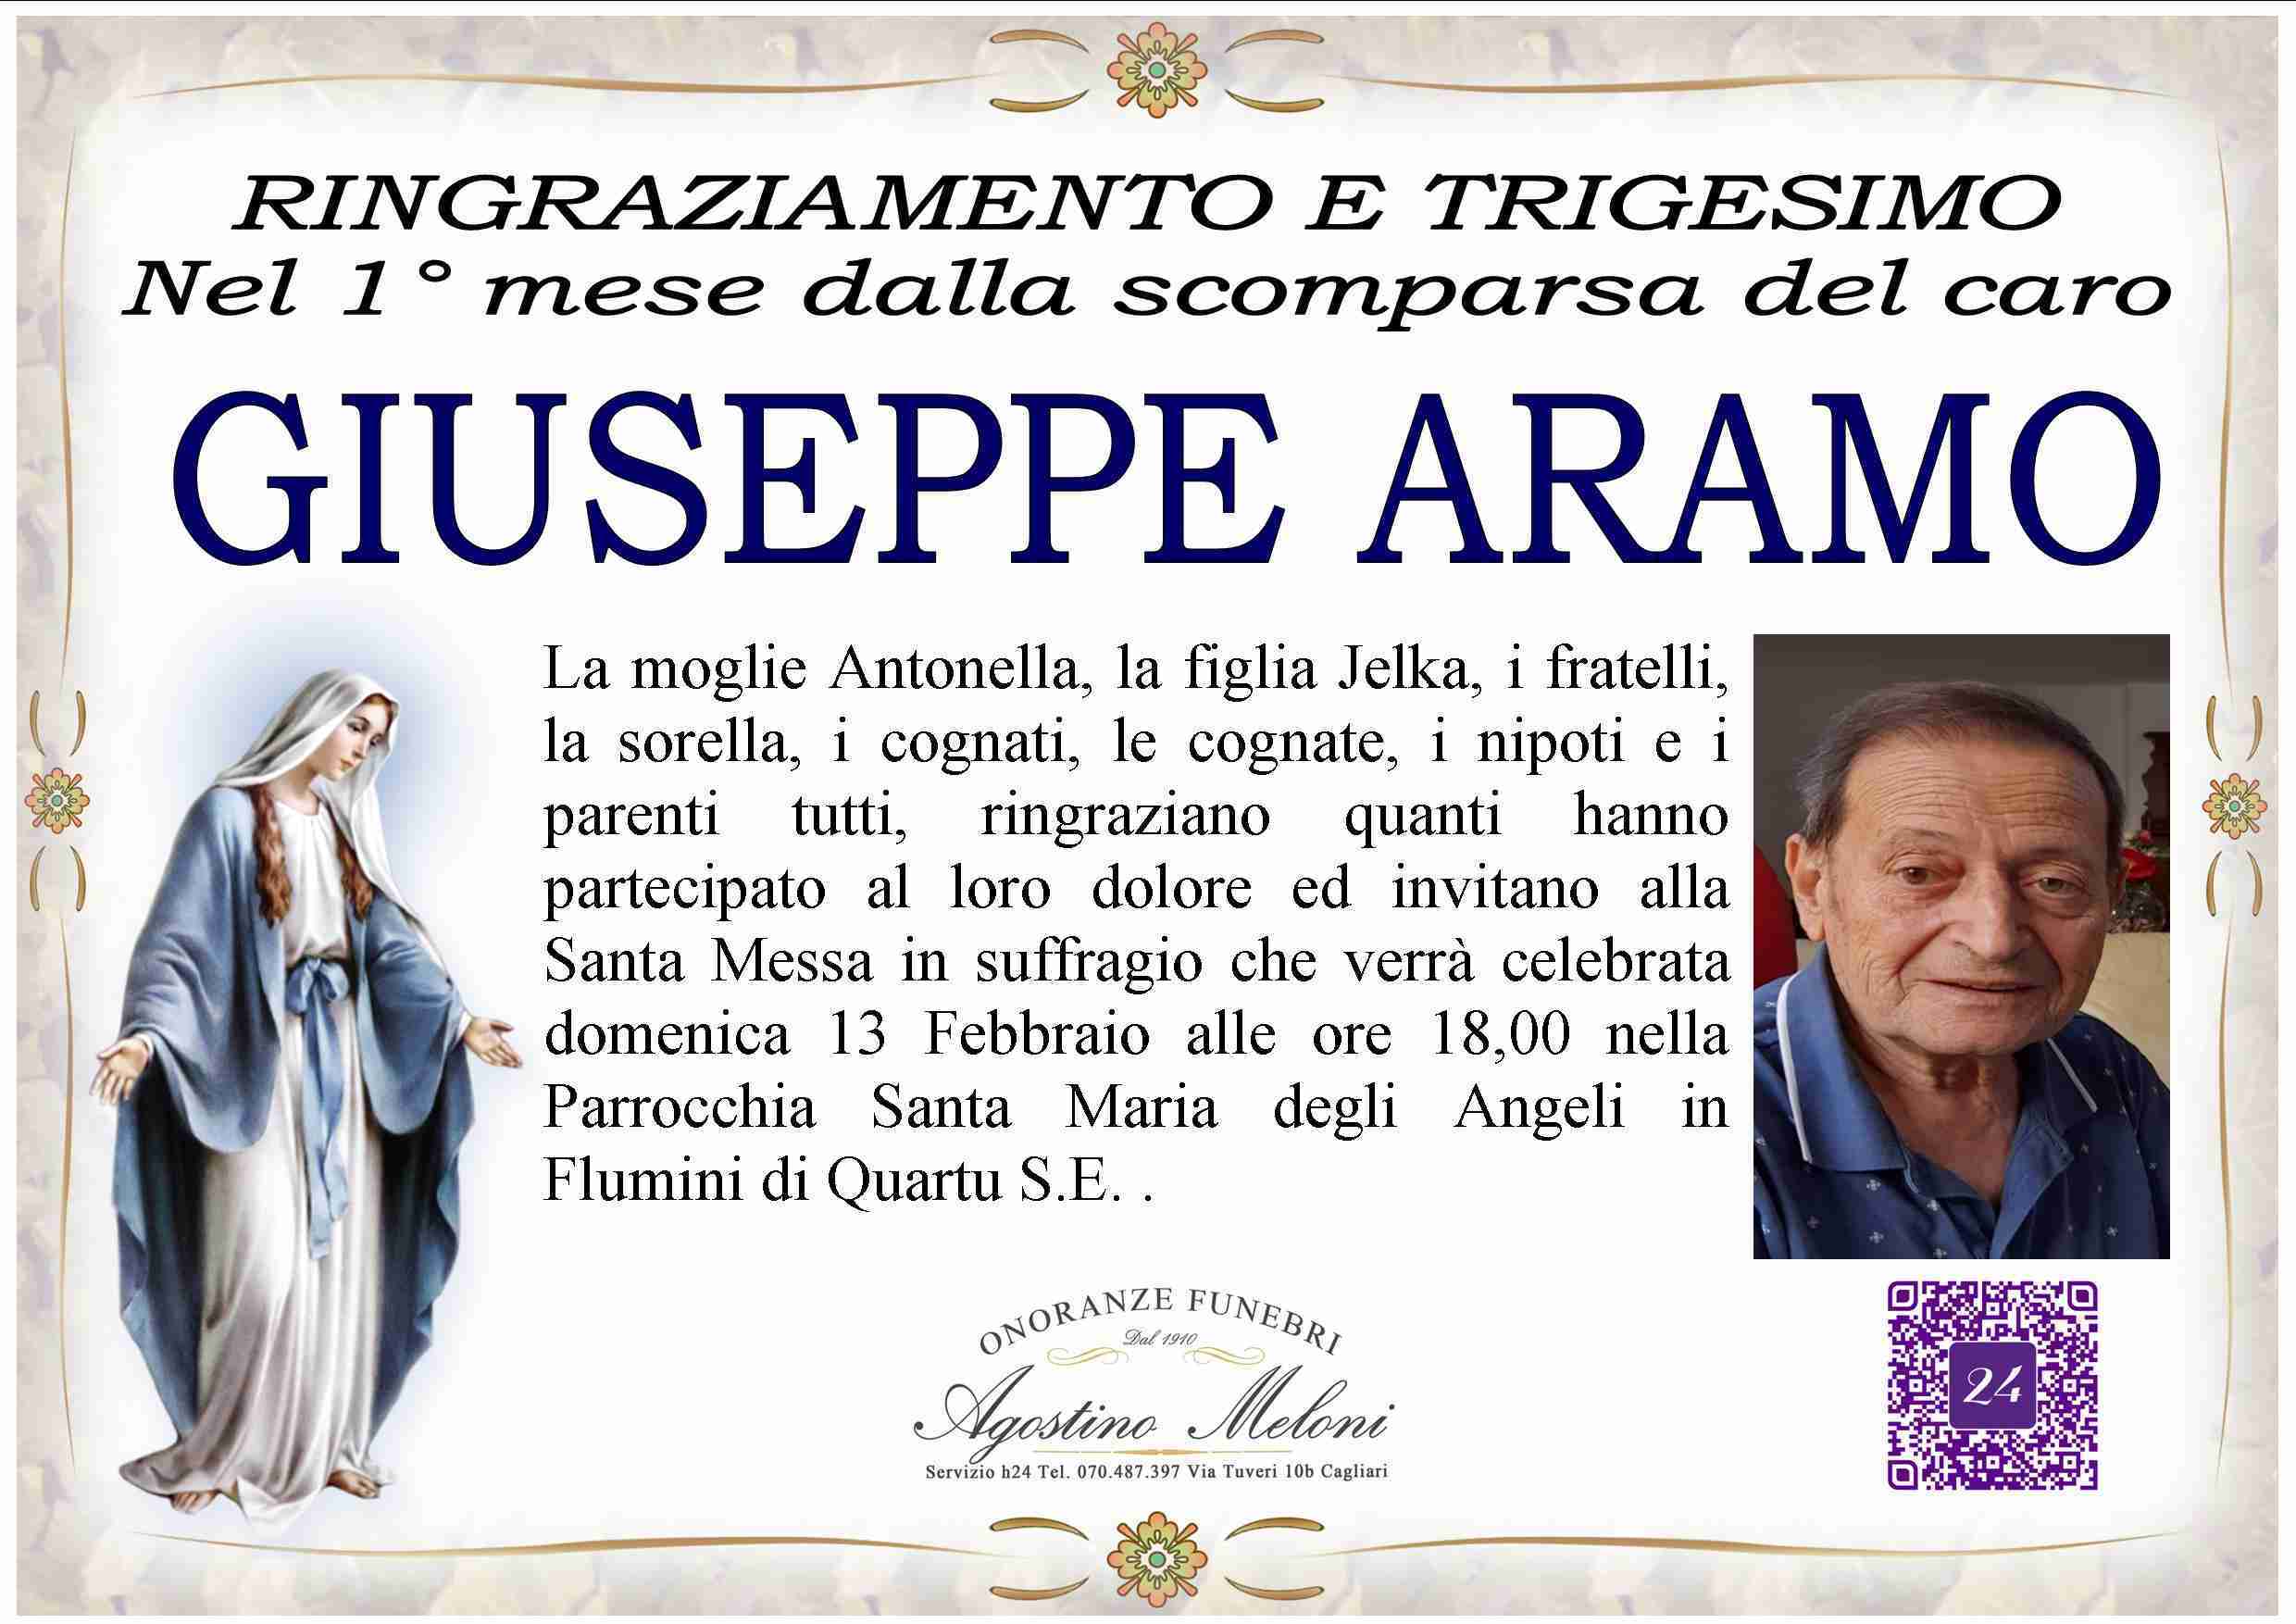 Giuseppe Aramo